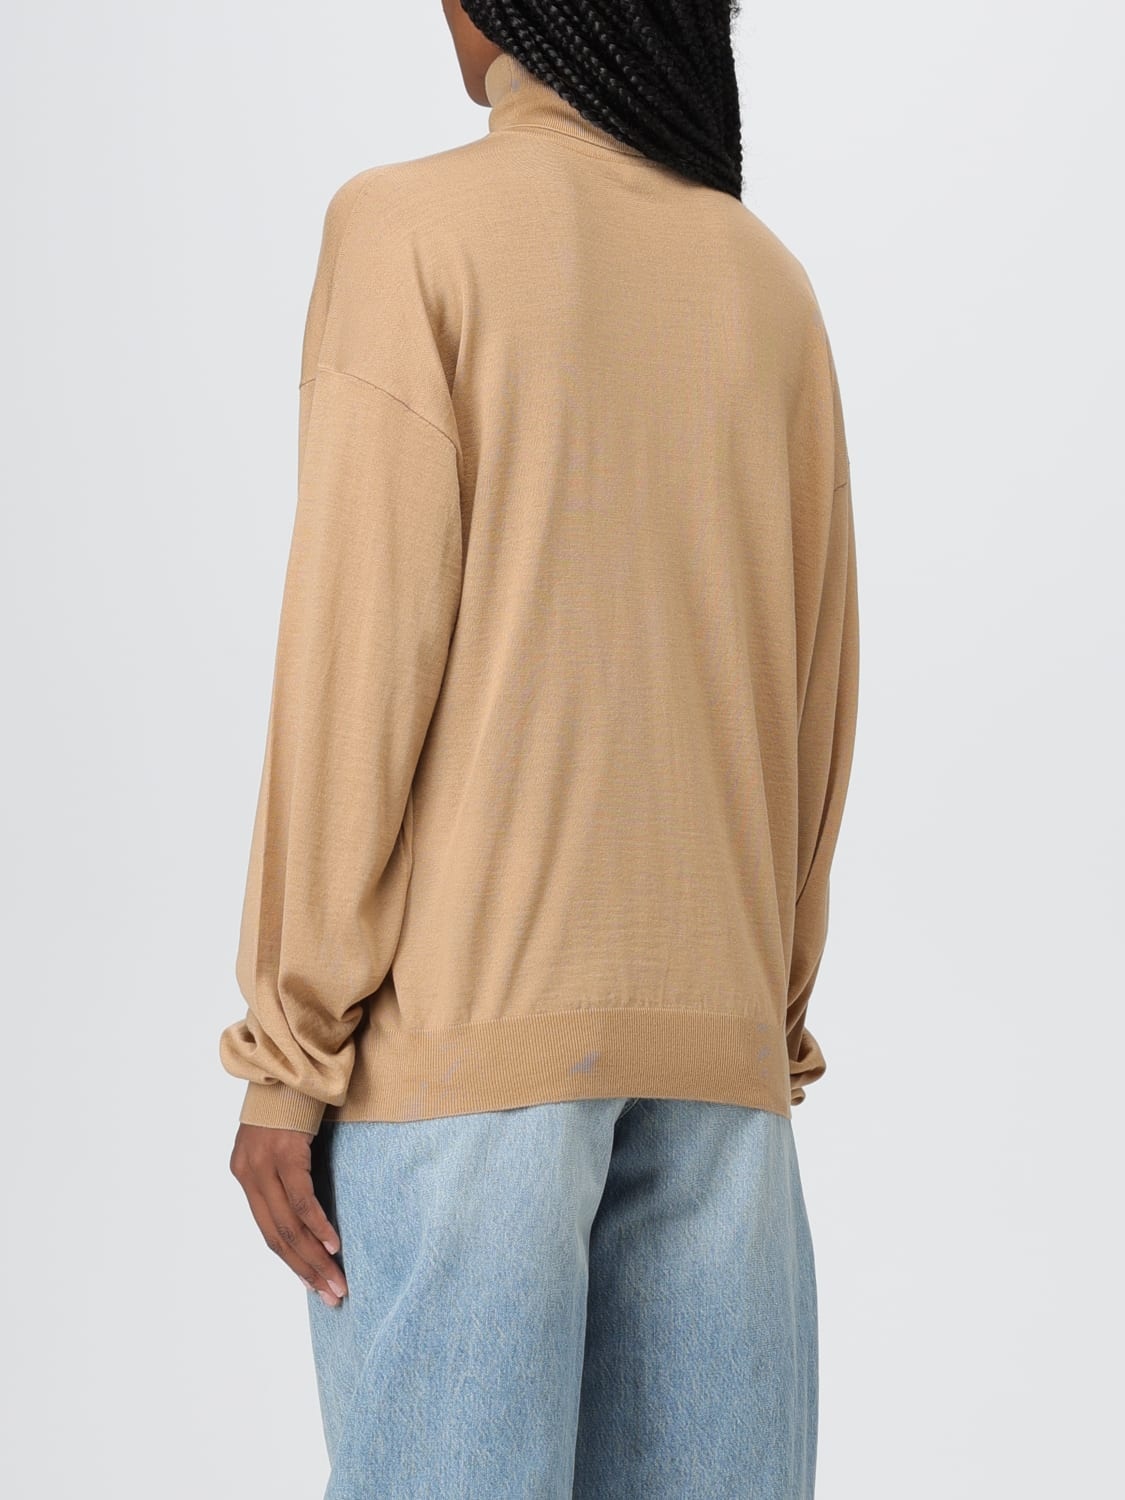 Saint Laurent sweater in virgin wool - 5